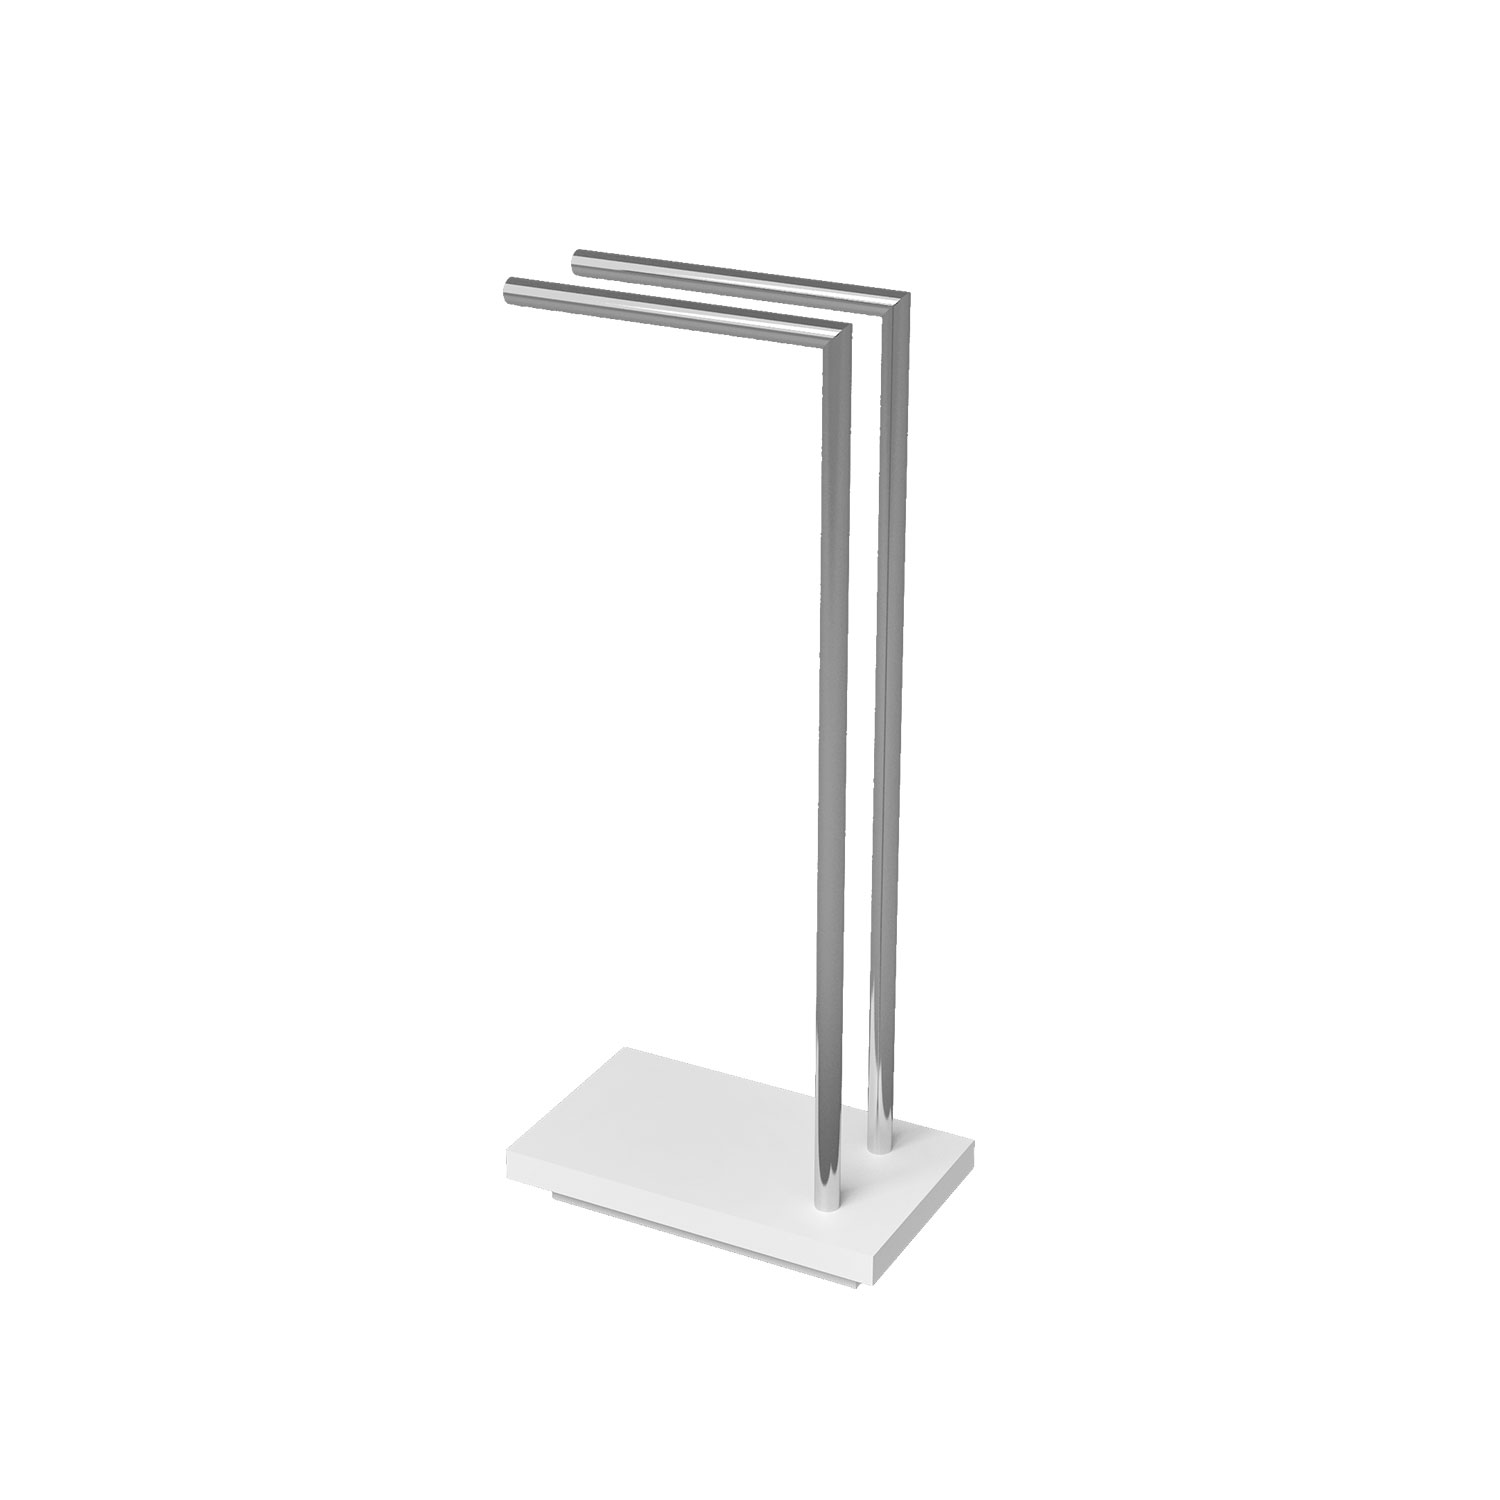 Freestanding towel bars in chromed steel